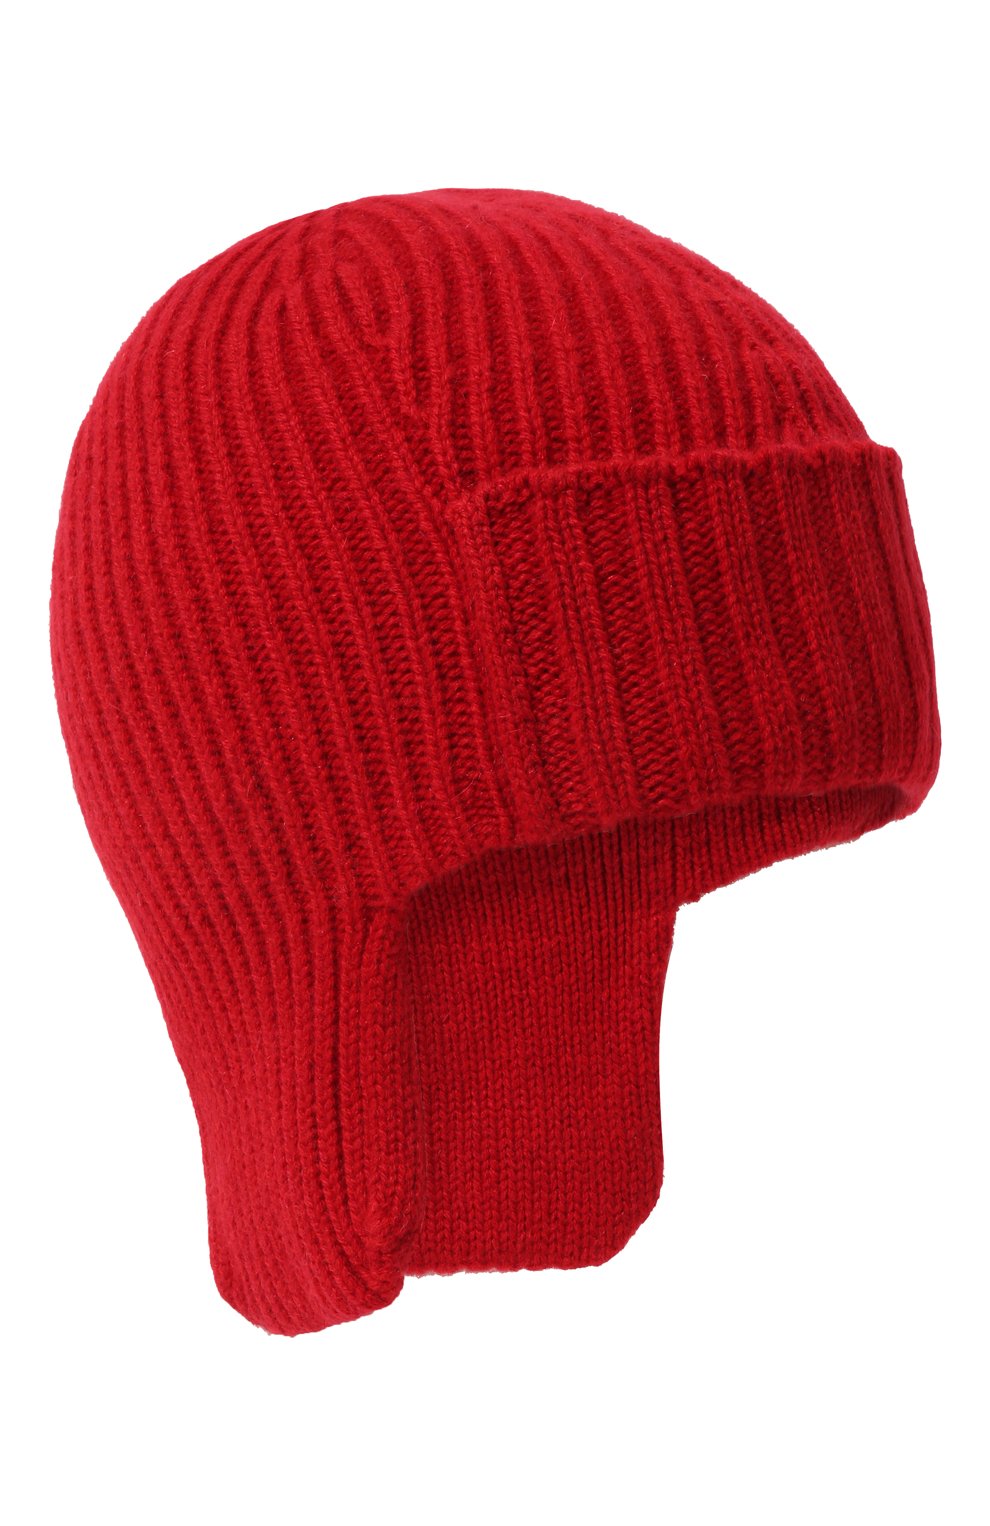 Мужская кашемировая шапка-ушанка maurice CANOE красного цвета, арт. 4004720 | Фото 1 (Материал: Текстиль, Кашемир, Шерсть; Кросс-КТ: Трикотаж)